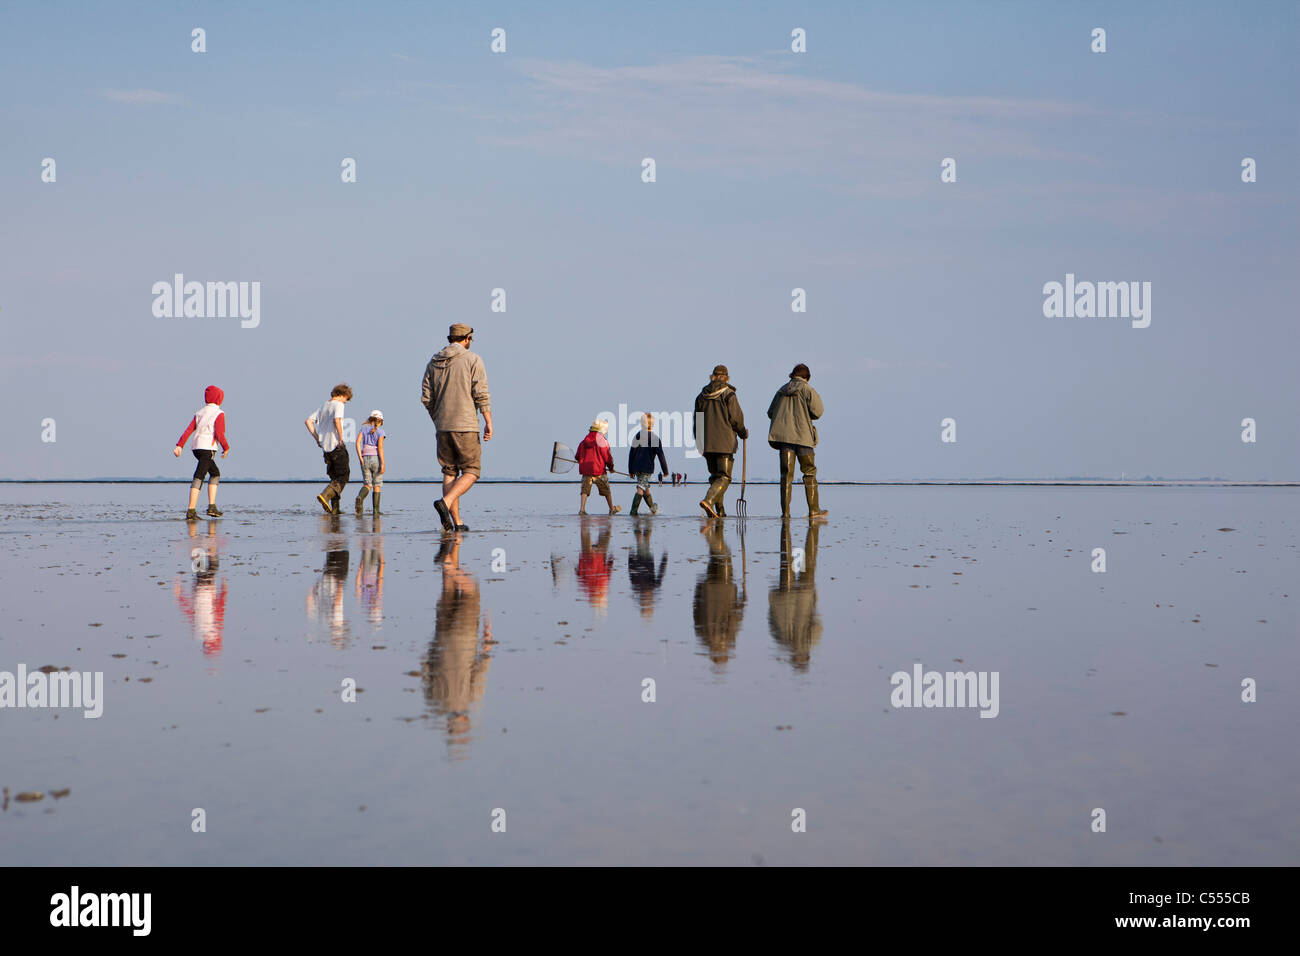 Les Pays-Bas, l'île d'Ameland, Buren, îles de la mer des Wadden. Unesco World Heritage Site. Les gens de marcher à travers les vasières. Banque D'Images